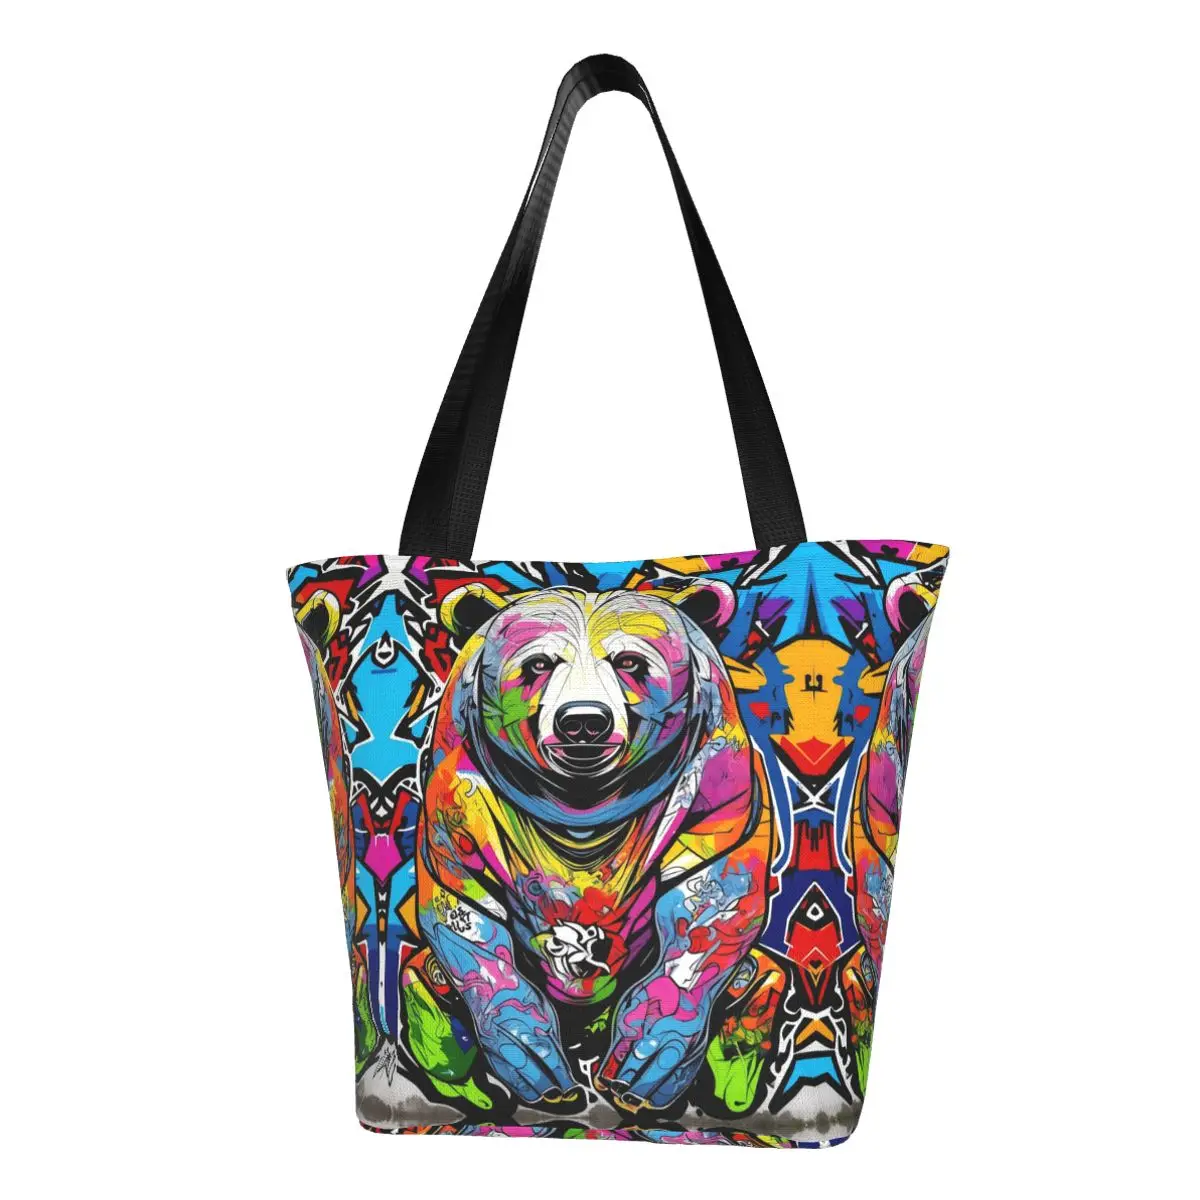 

Городская сумка-шоппер с граффити медведем, уличный художественный саквояж на плечо с графическим дизайном, элегантная тканевая дорожная сумочка-тоут